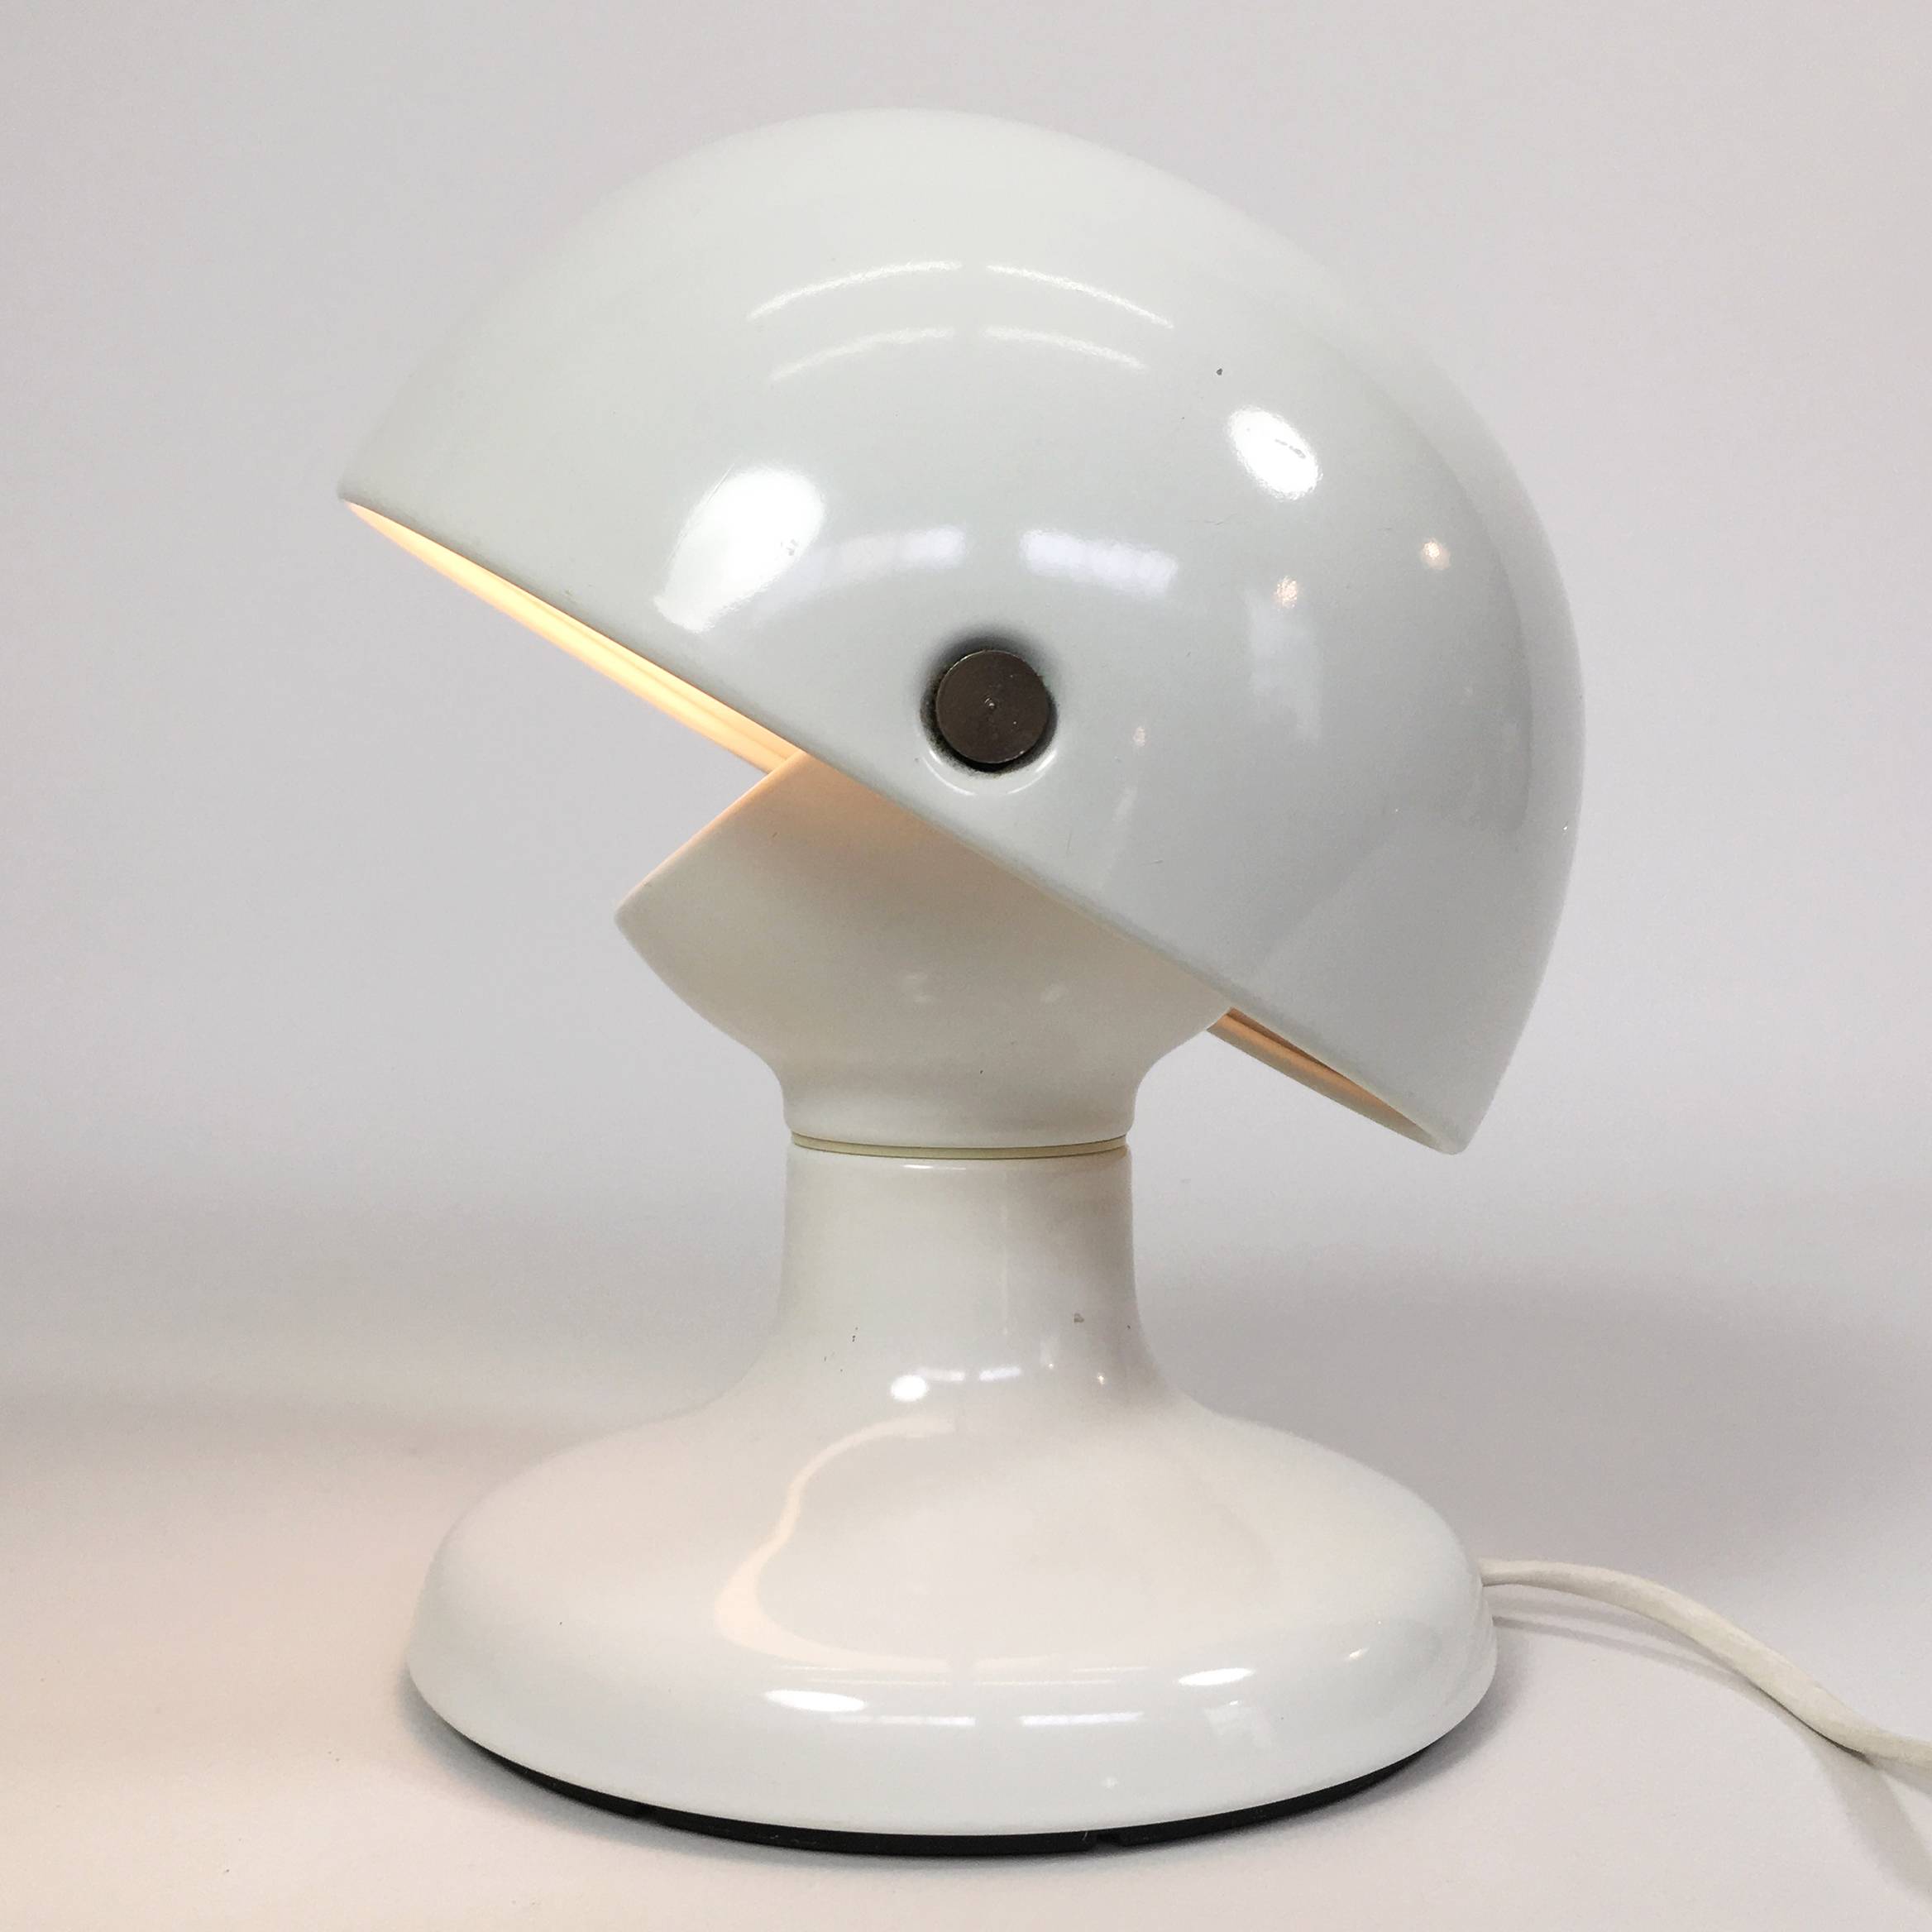 Jucker lamp by Tobia Scarpa.